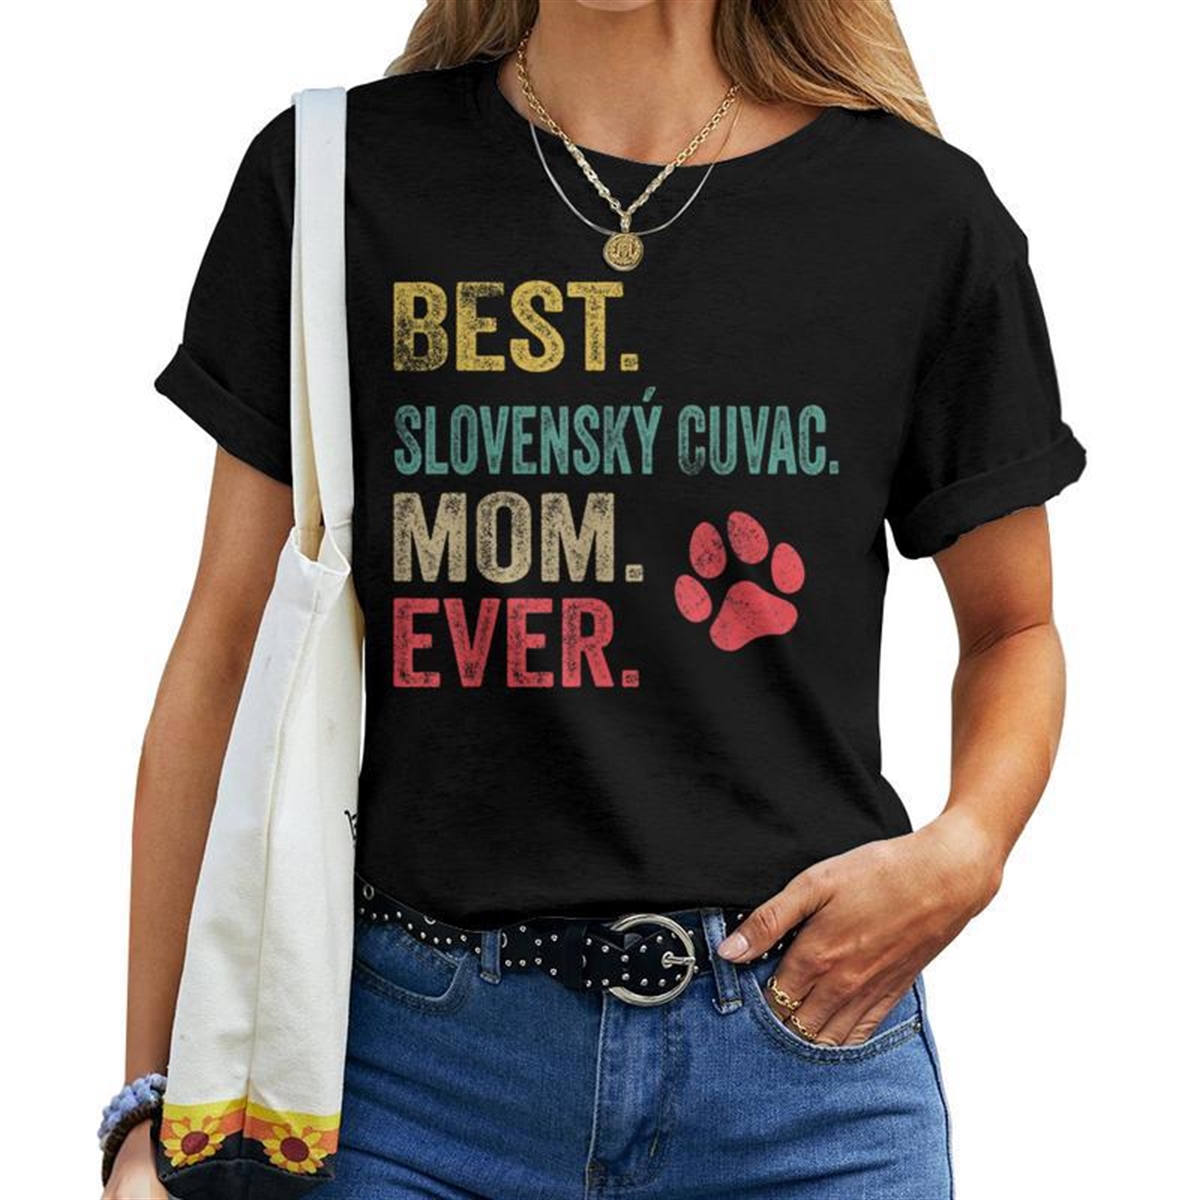 Best Slovensk Cuvac Mom Ever Vintage Mother Dog Lover Women T-shirt